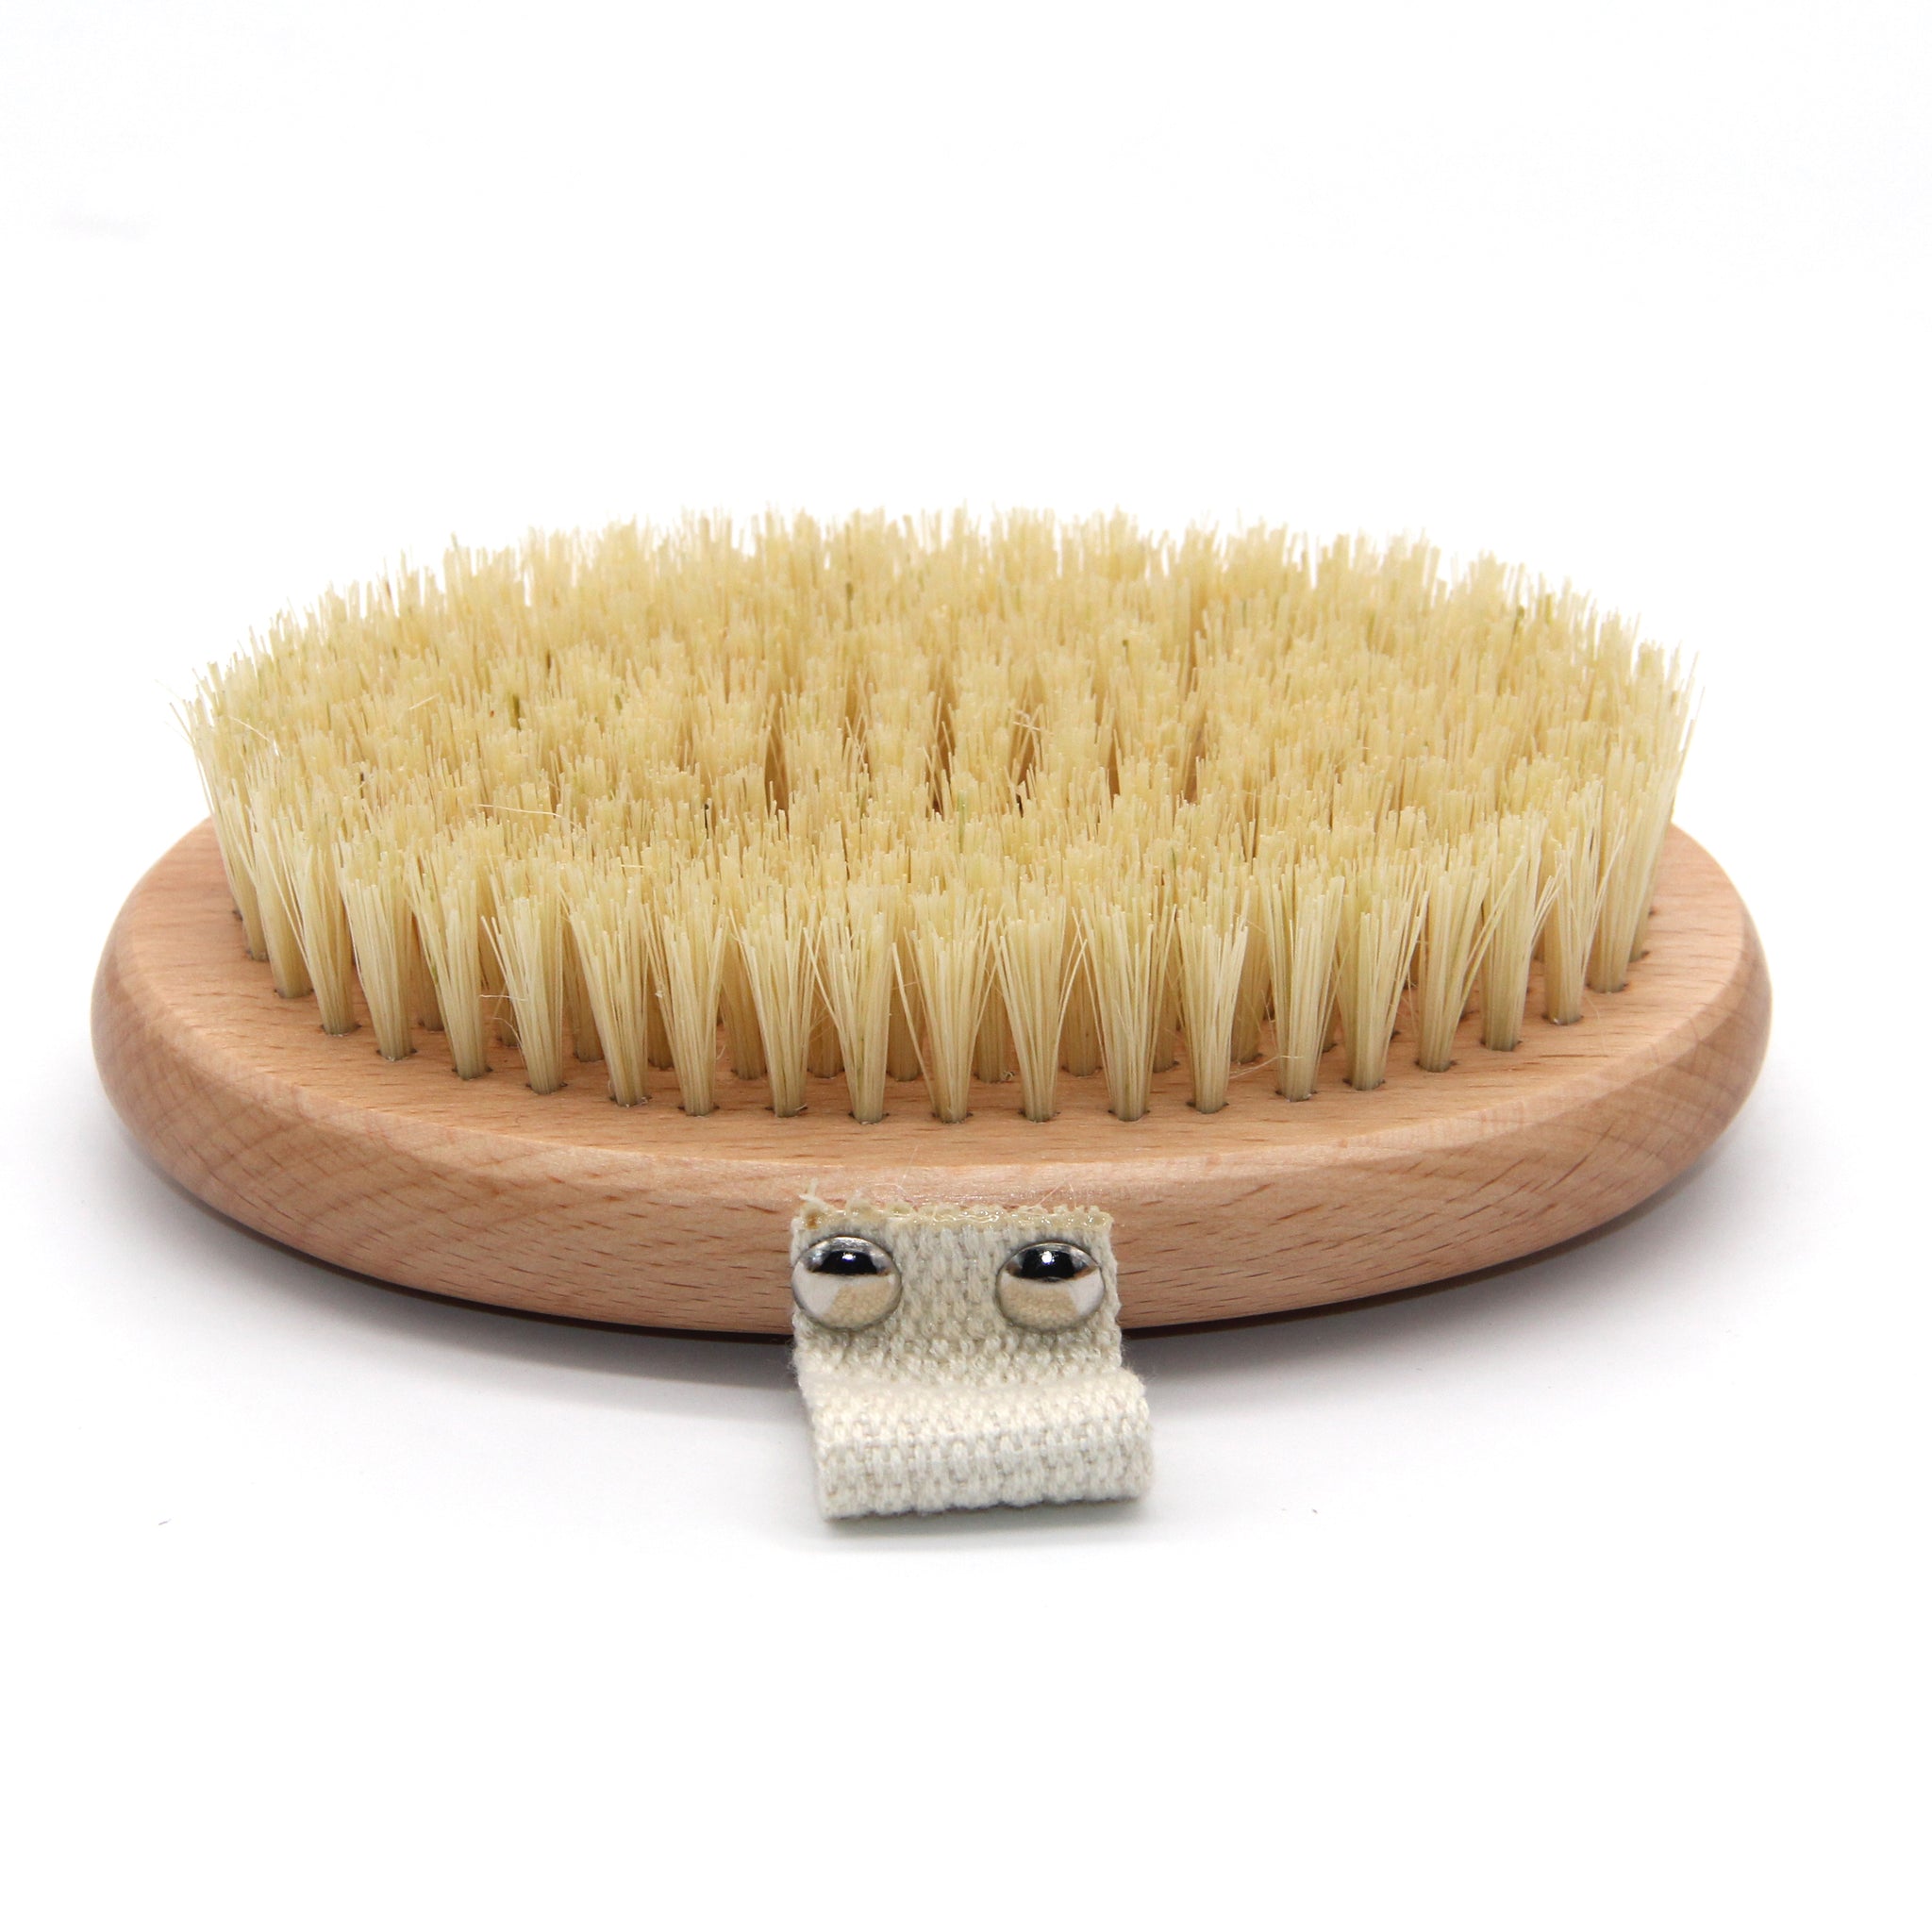 Dry Brush – Zefiro Chicago